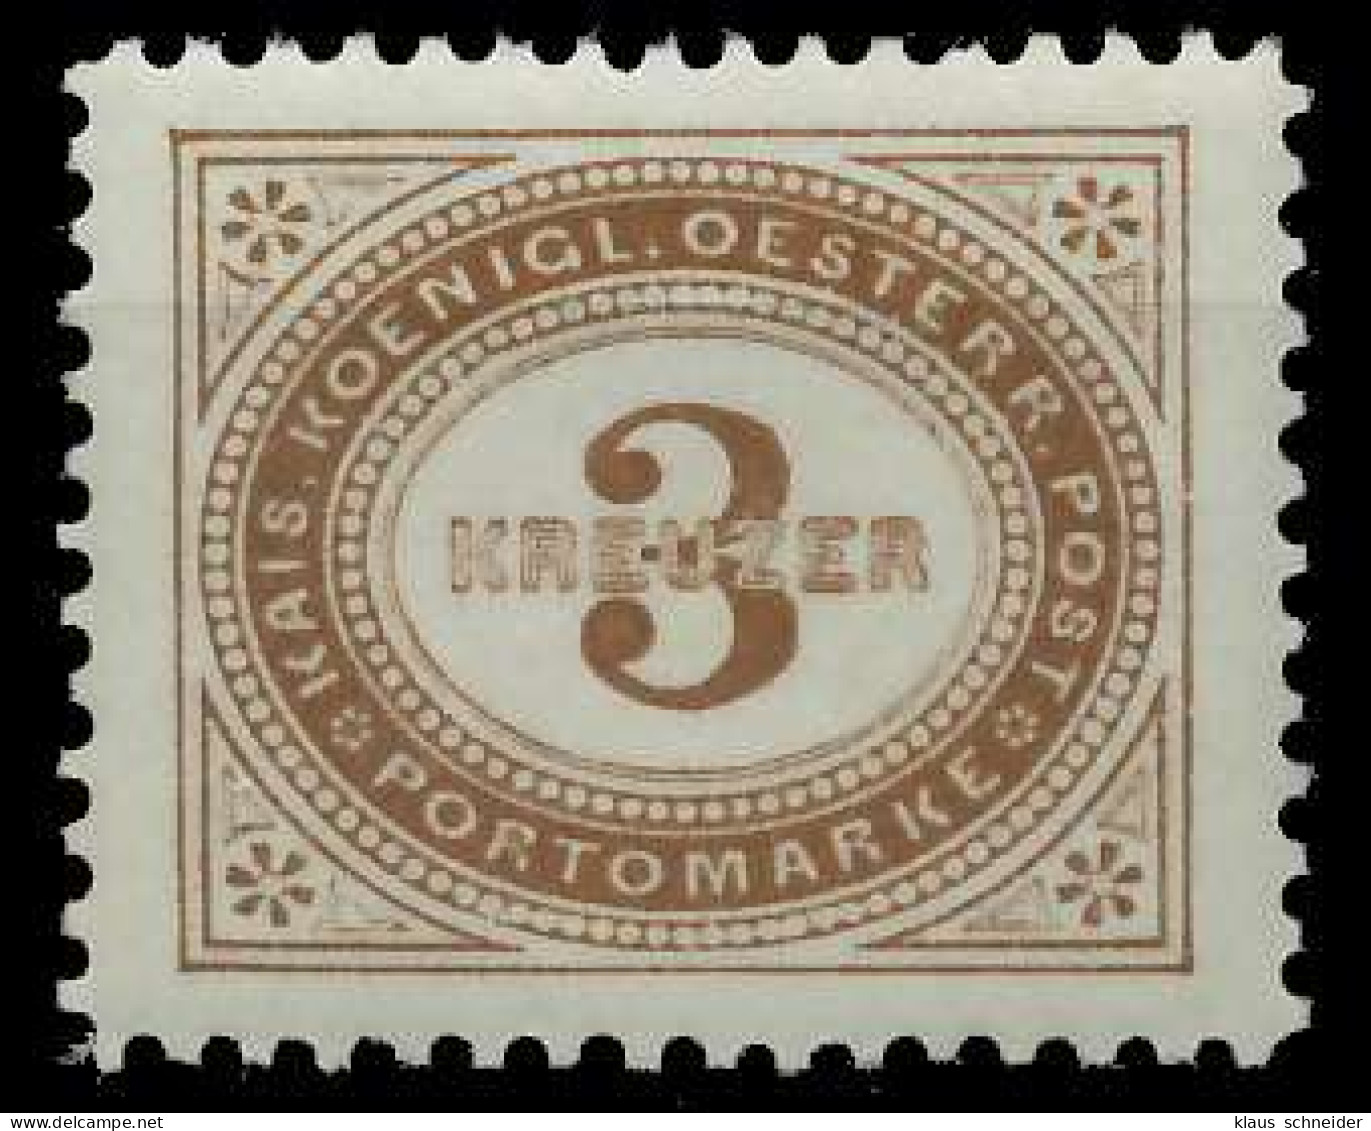 ÖSTERREICH PORTOMARKEN 1894 Nr 3F Postfrisch X7428A6 - Portomarken